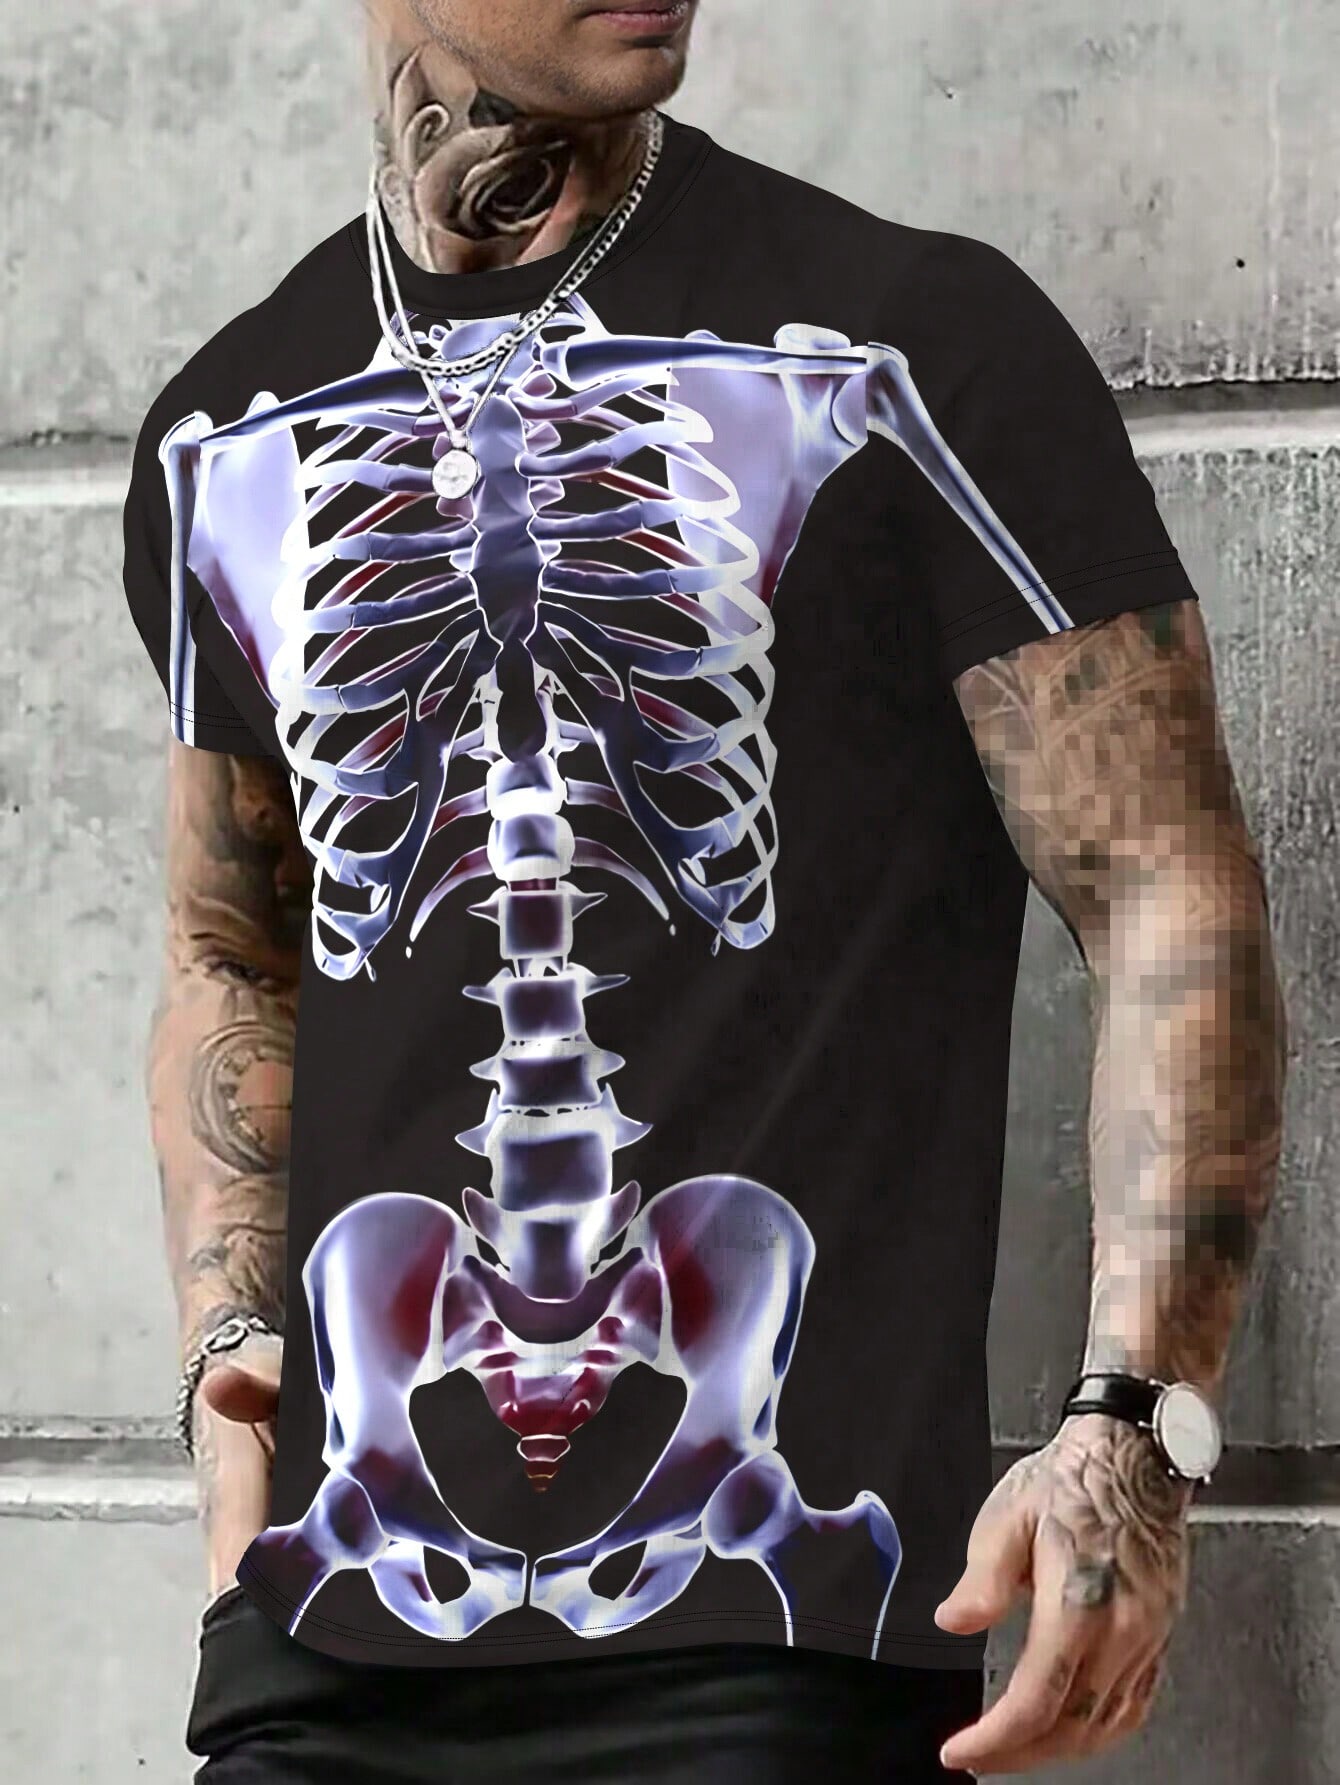 Мужская футболка с короткими рукавами и принтом скелетов Manfinity LEGND, черный